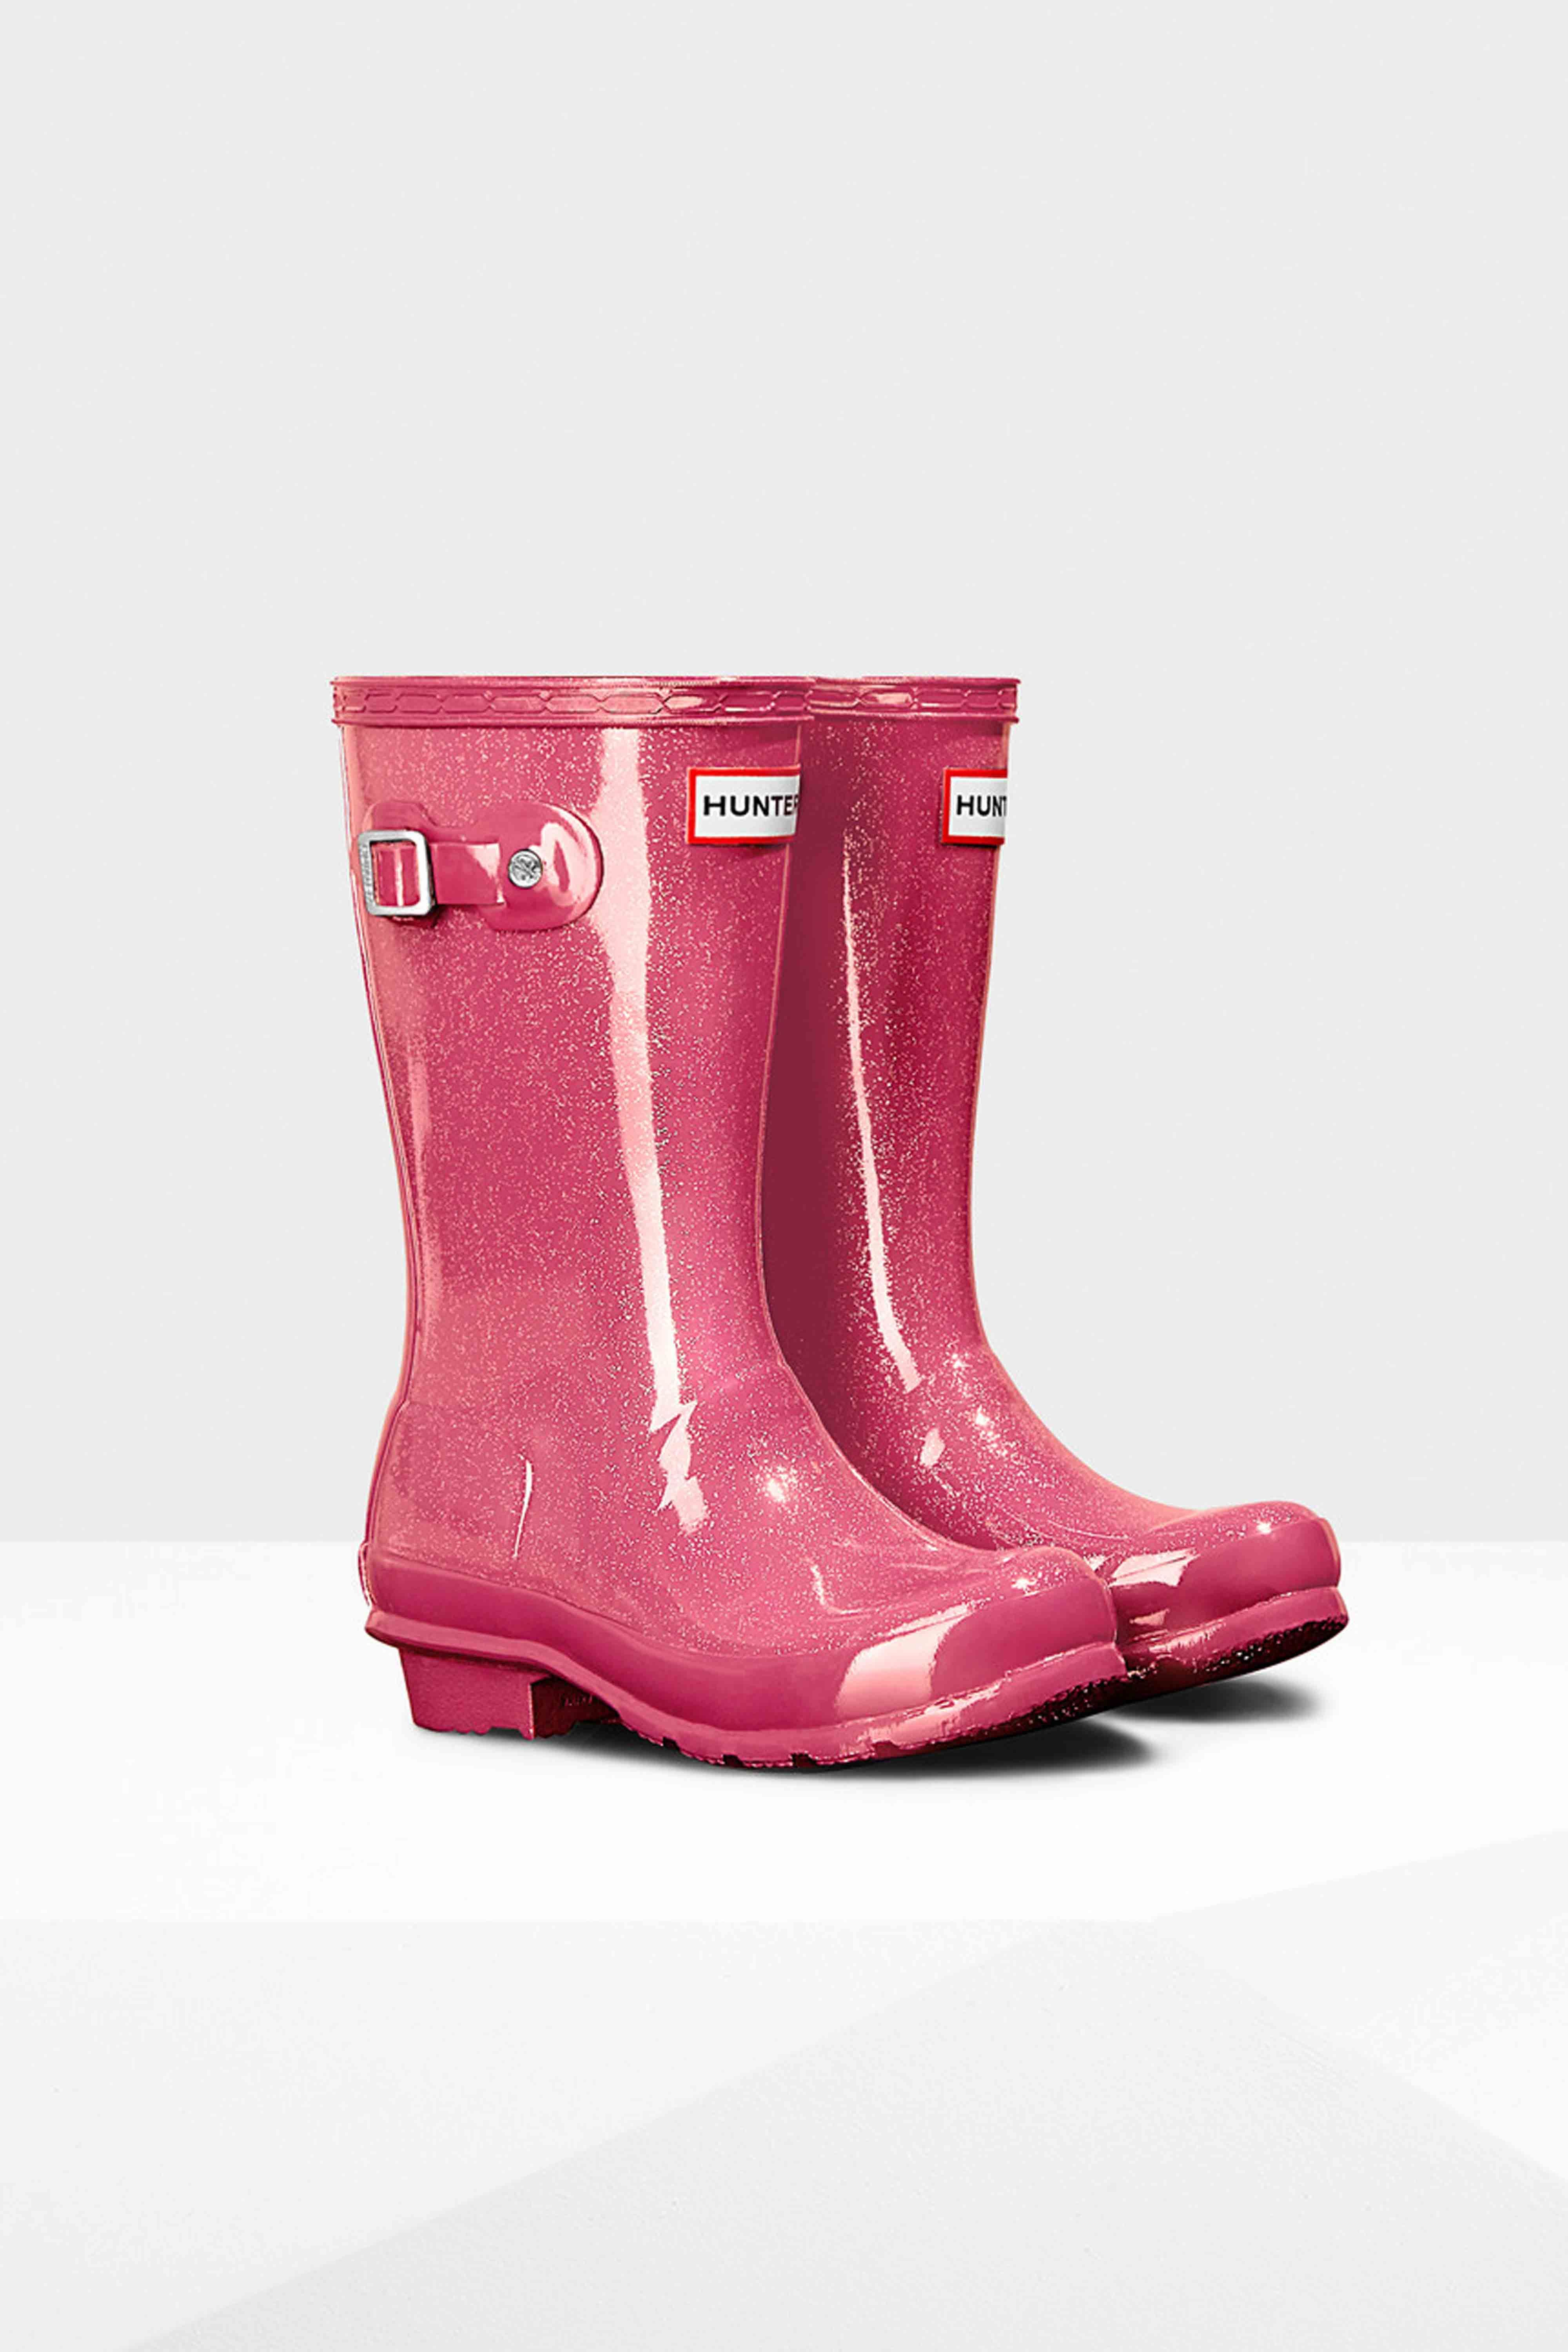 j crew glitter rain boots